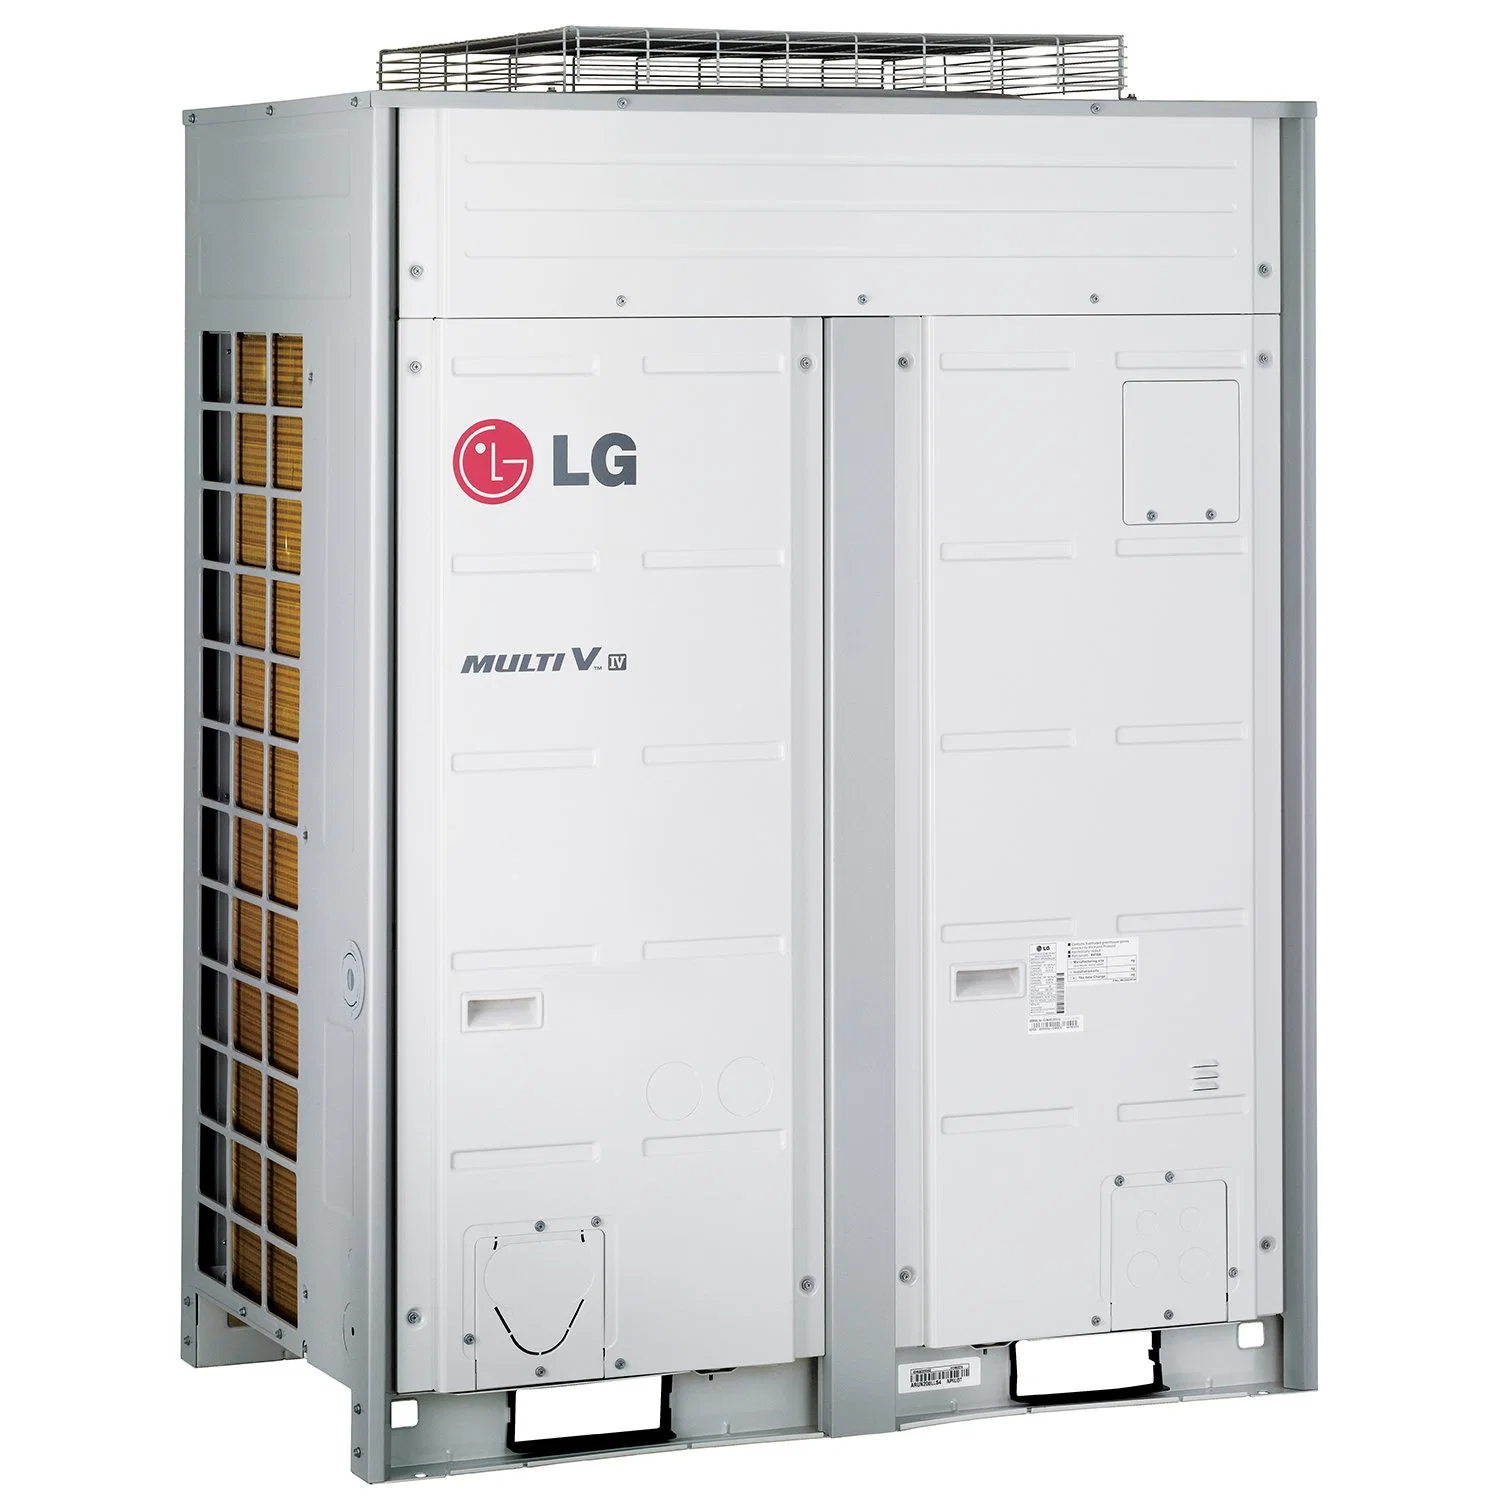 LG Industrial condicionadores de ar coller do ar de refrigeração